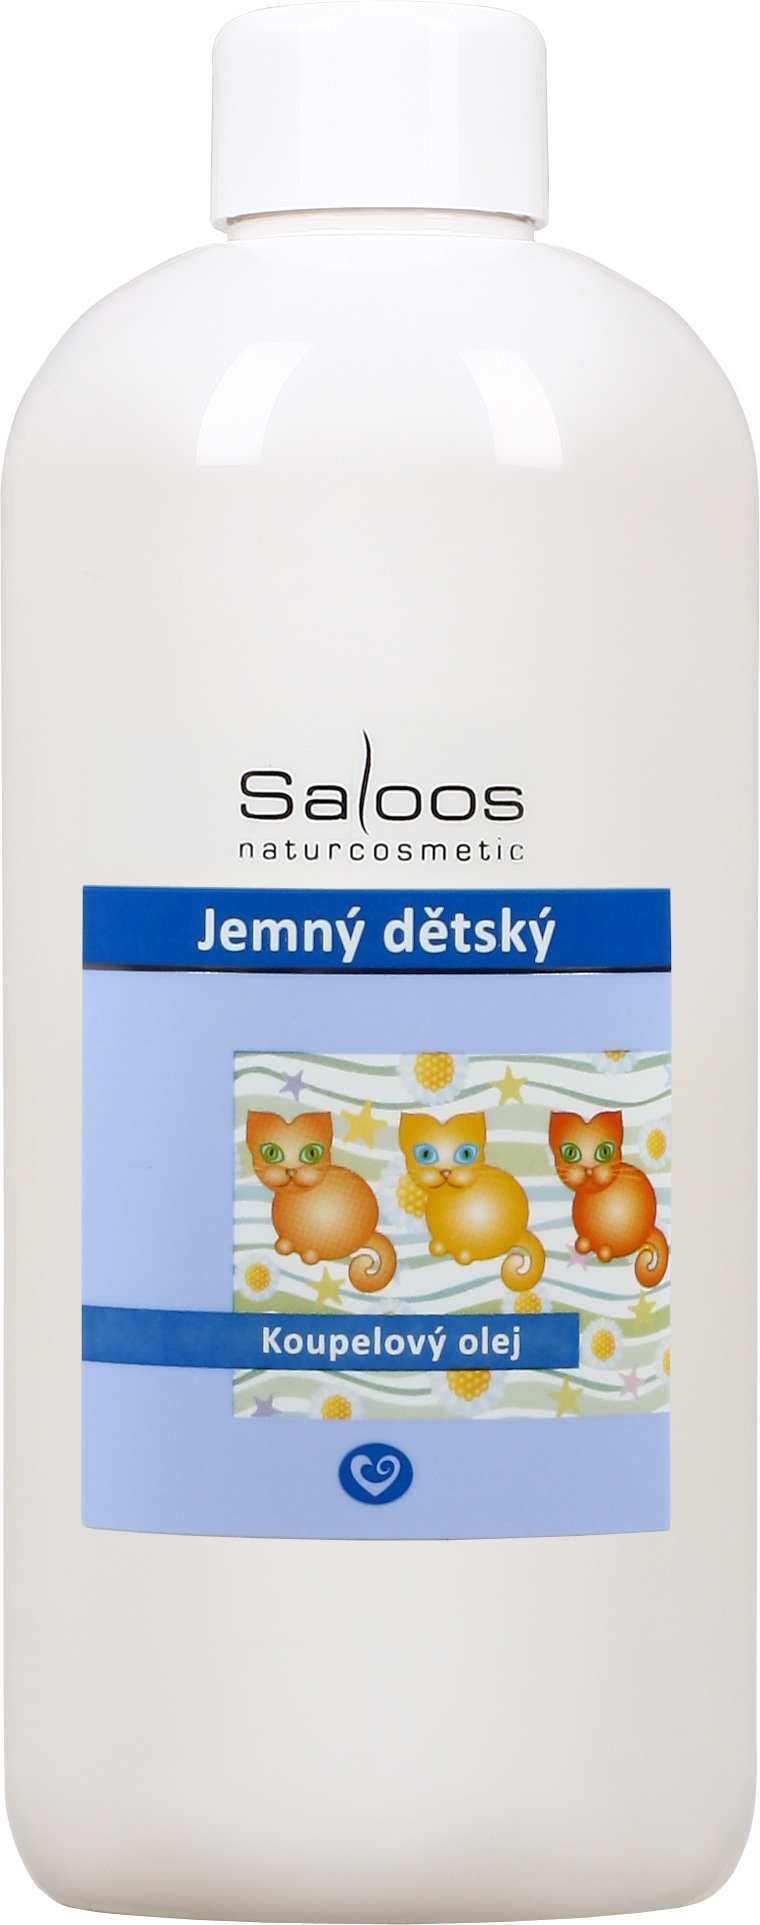 Saloos Jemný dětský - koupelový olej Balení: 500 ml